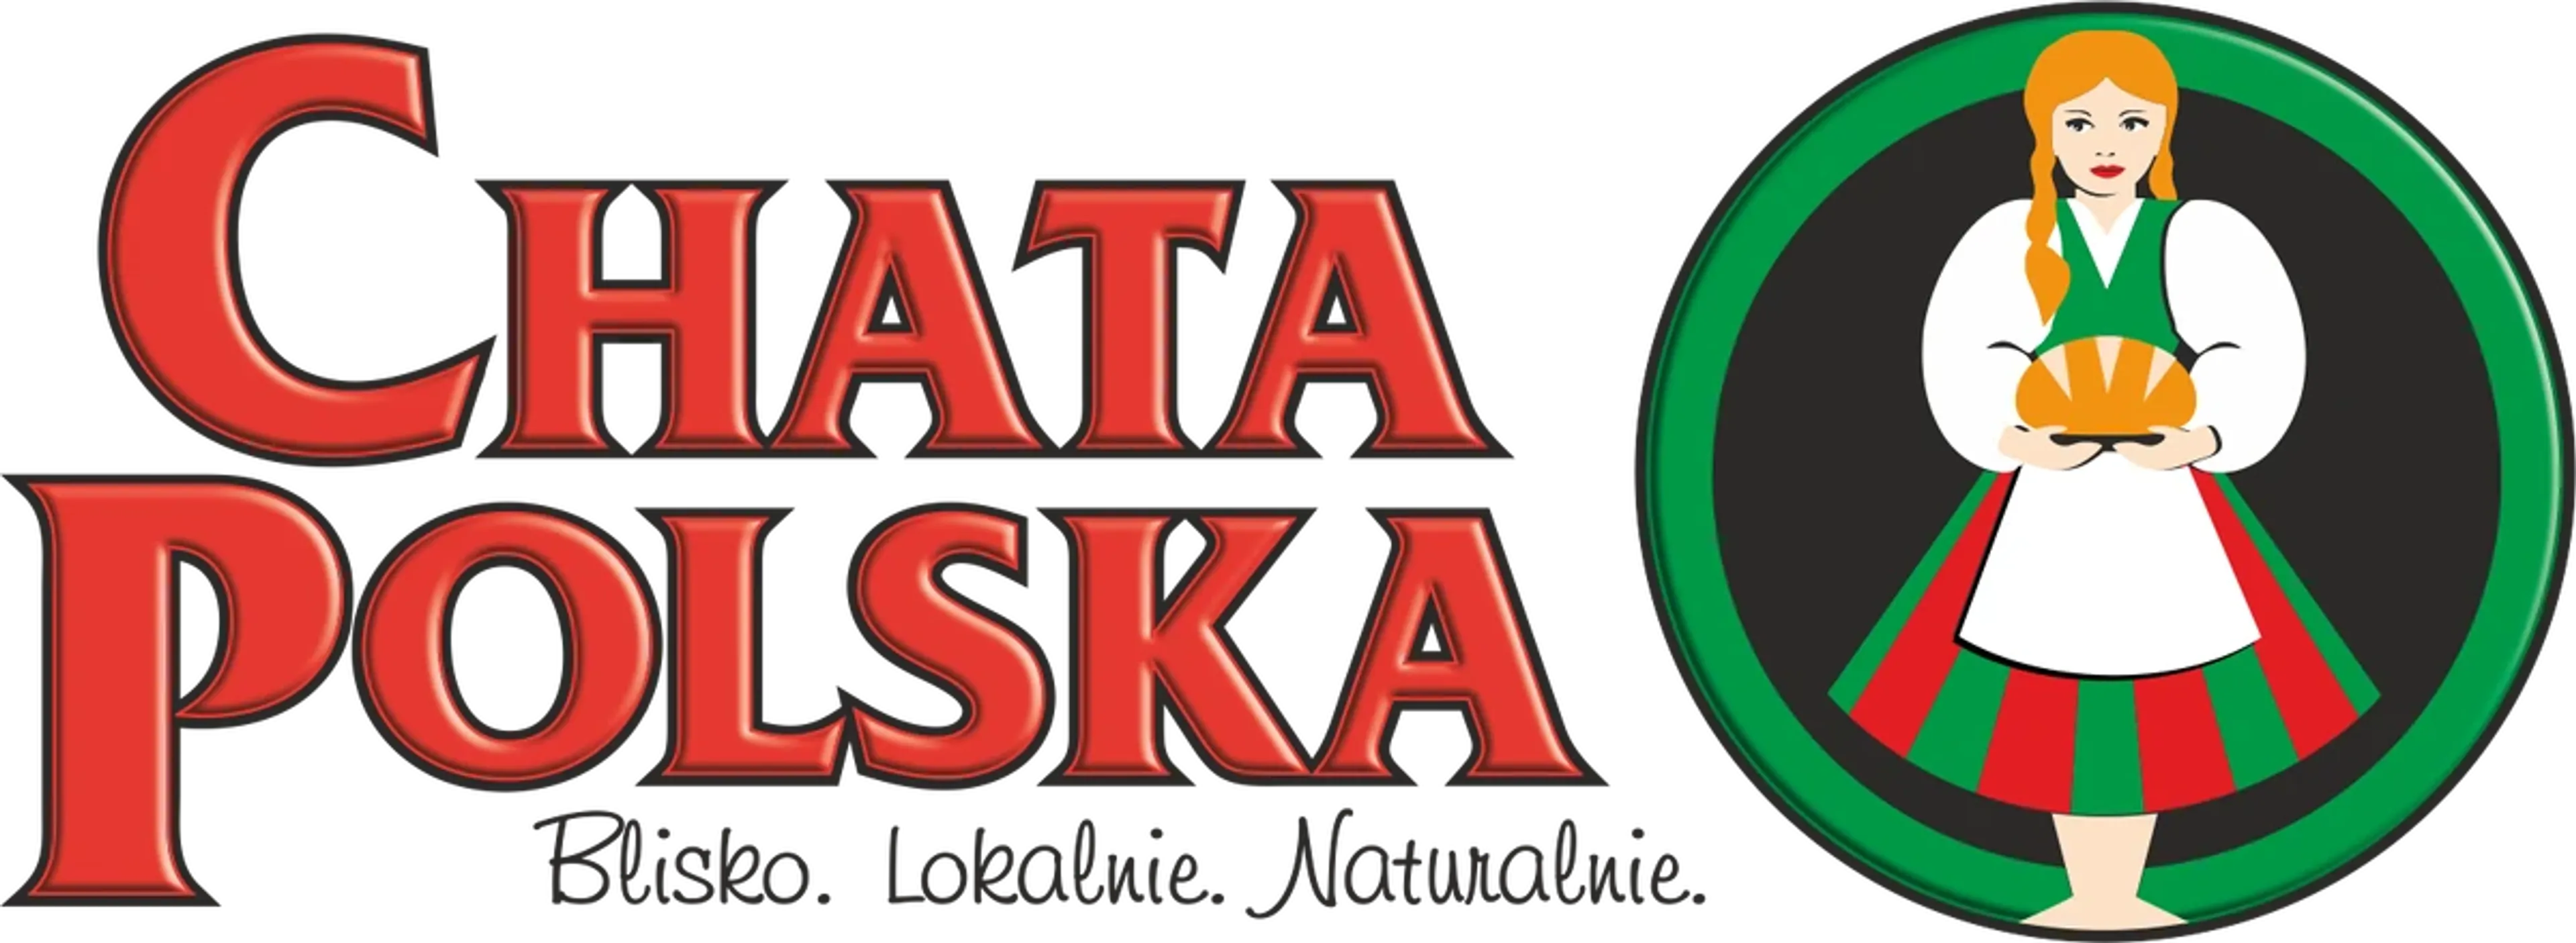 CHATA POLSKA logo